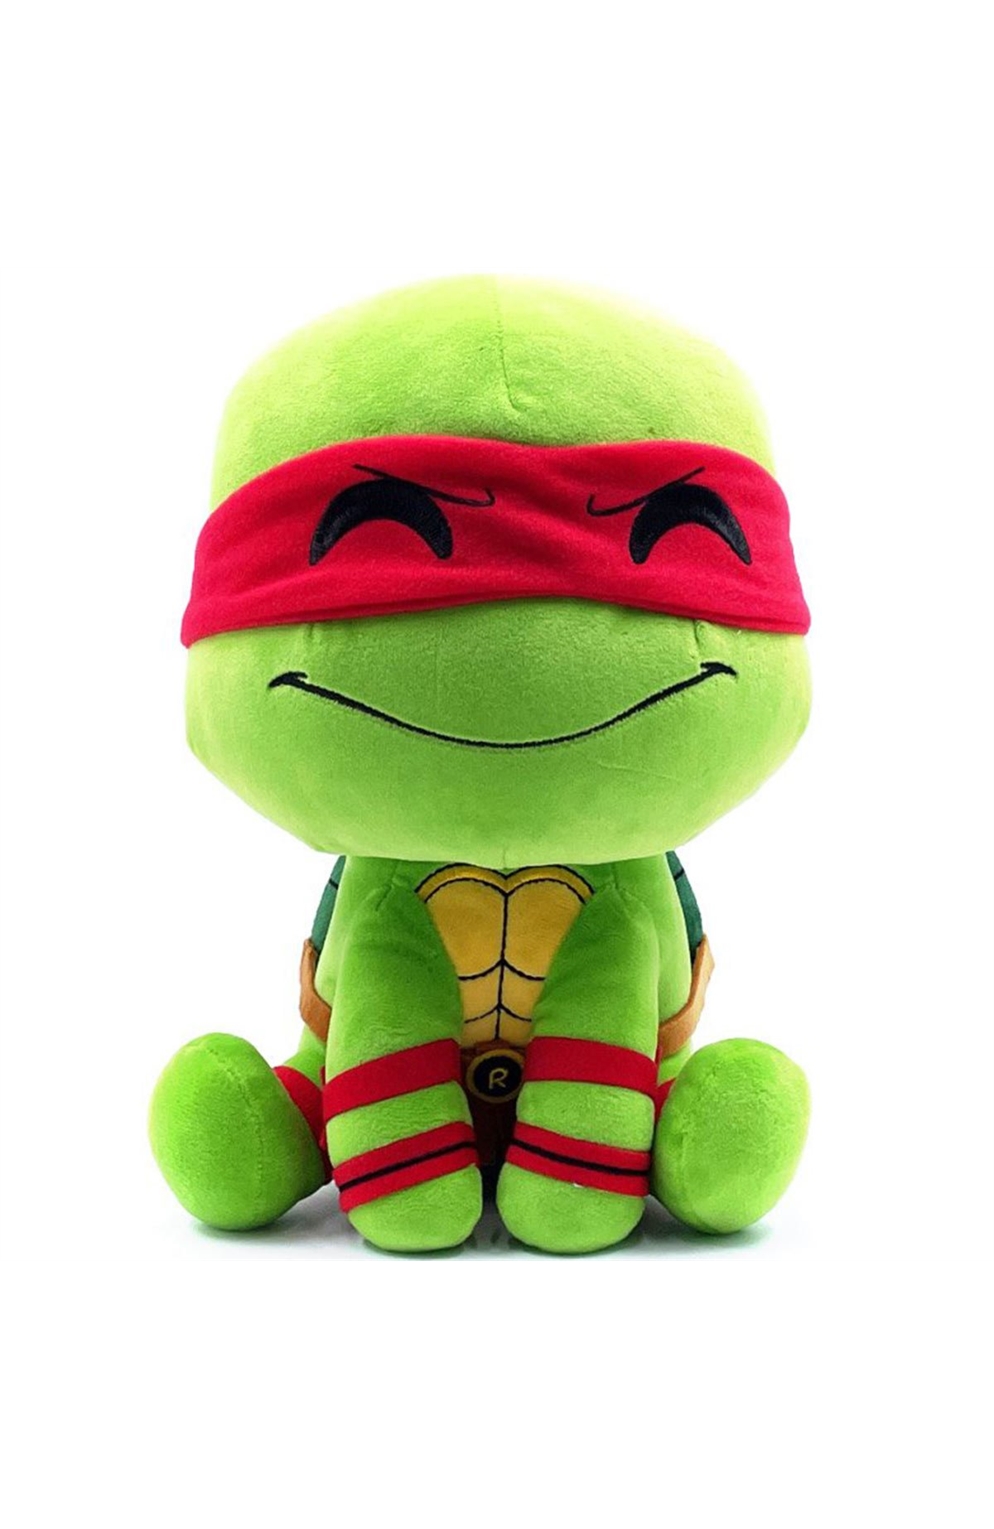 Youtooz - Teenage Mutant Ninja Turtles Raphael 9-Inch Plush